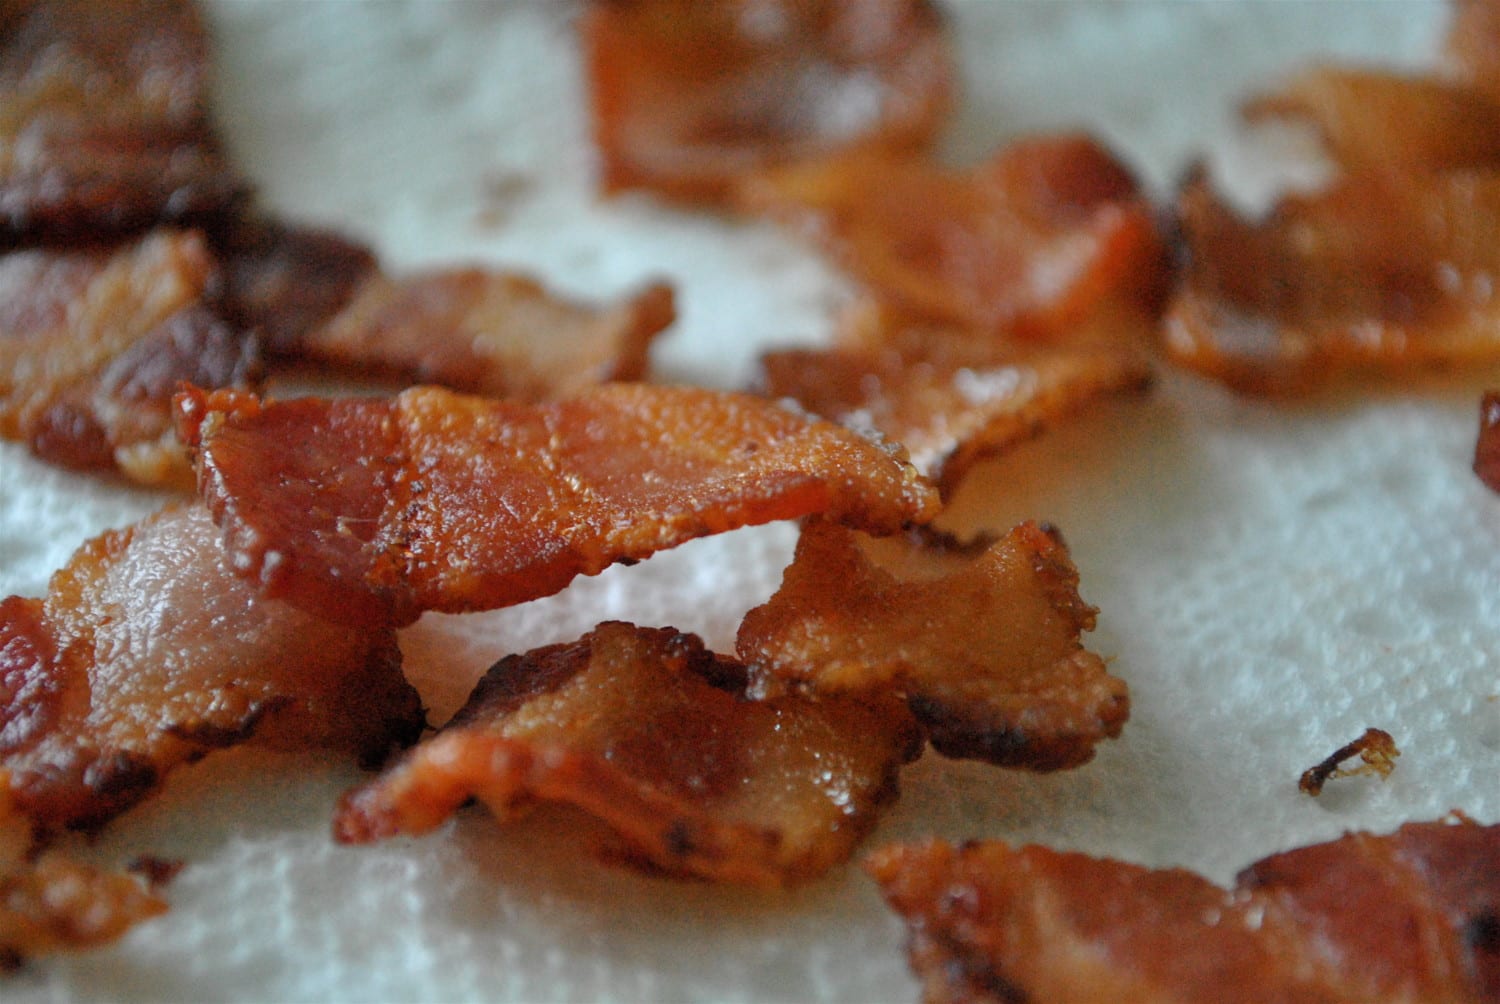 bacon photo